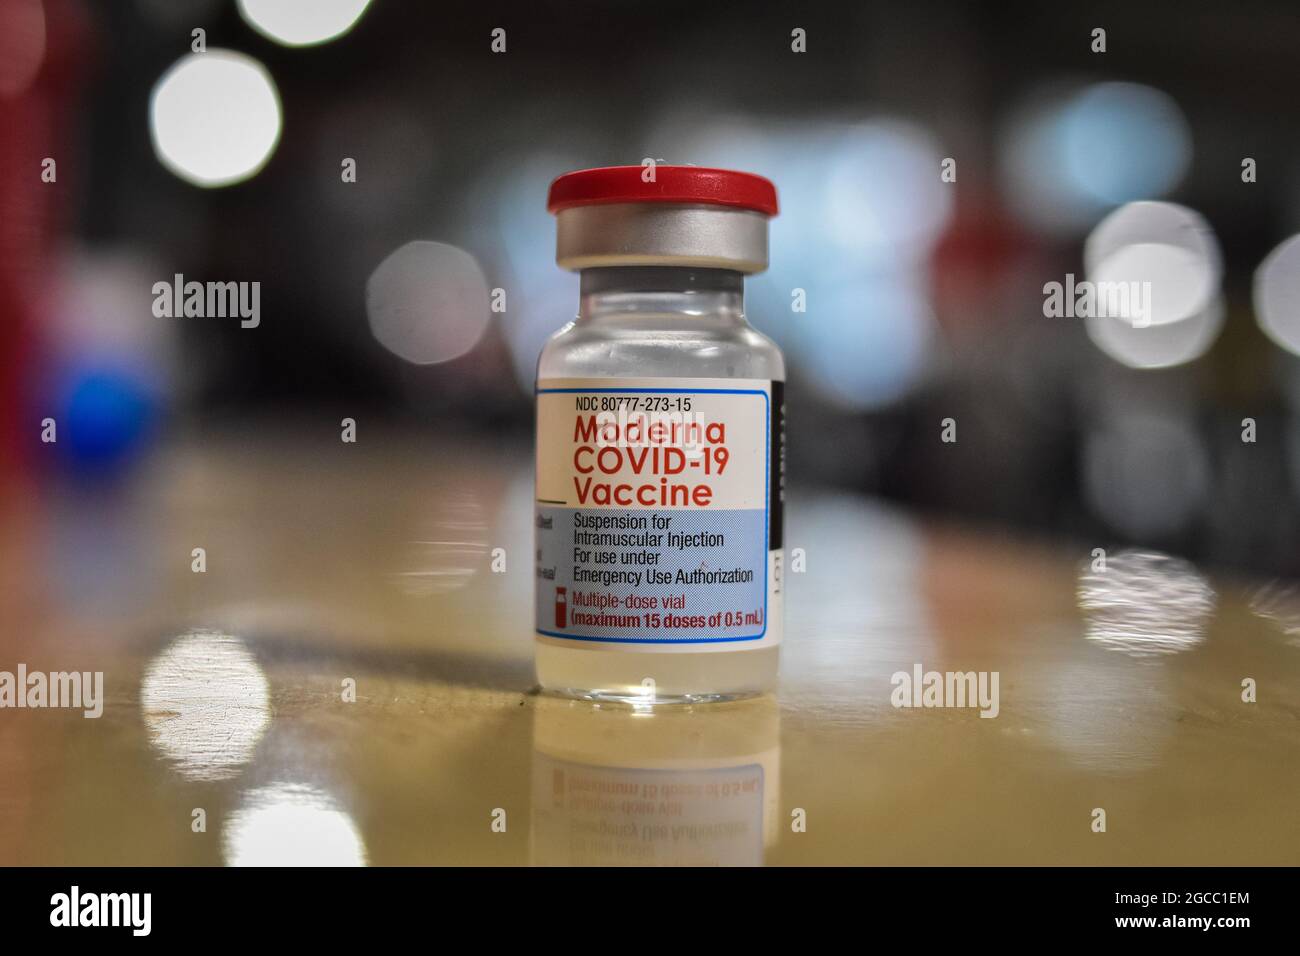 Eine Ampulle des Impfstoffes Moderna COVID-19, da Menschen im Alter von 25 bis 30 Jahren am 2. August 2021 in Ipiales - Nariño, Kolumbien, ihre Impfphase mit dem neuartigen Impfstoff Moderna COVID-19 gegen die Coronavirus-Krankheit beginnen. Stockfoto